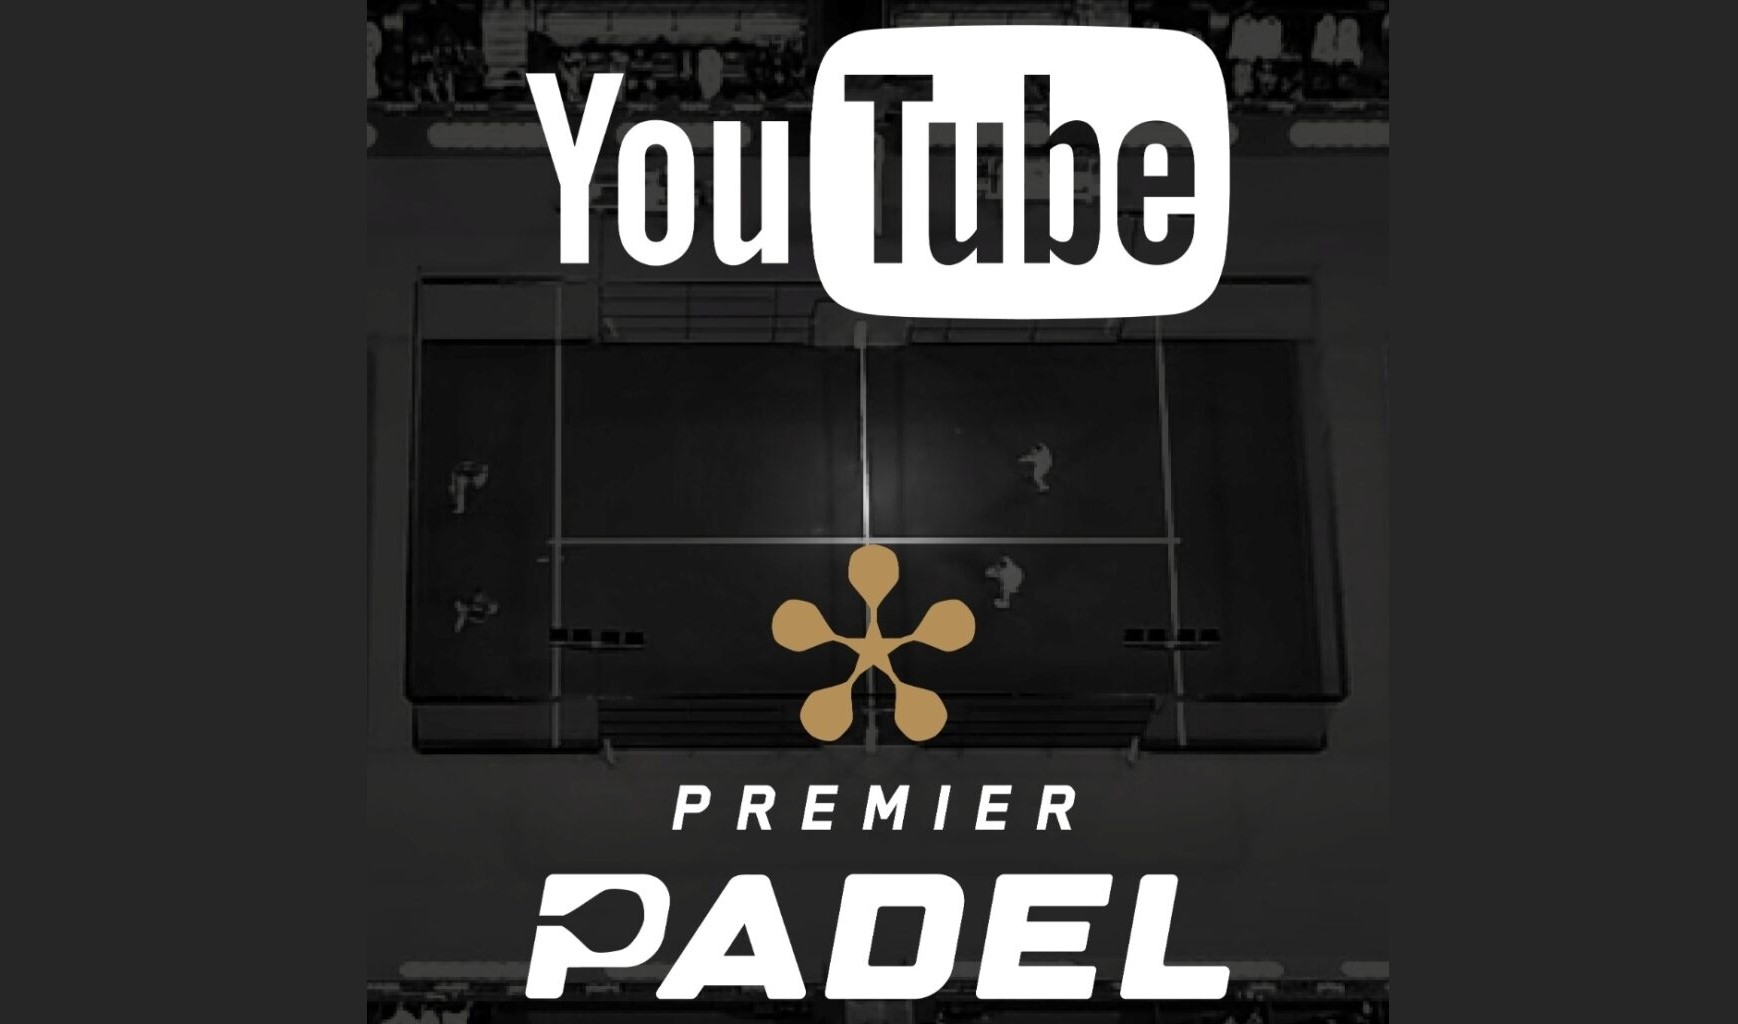 Youtube. Premier Padel 2022 16 9